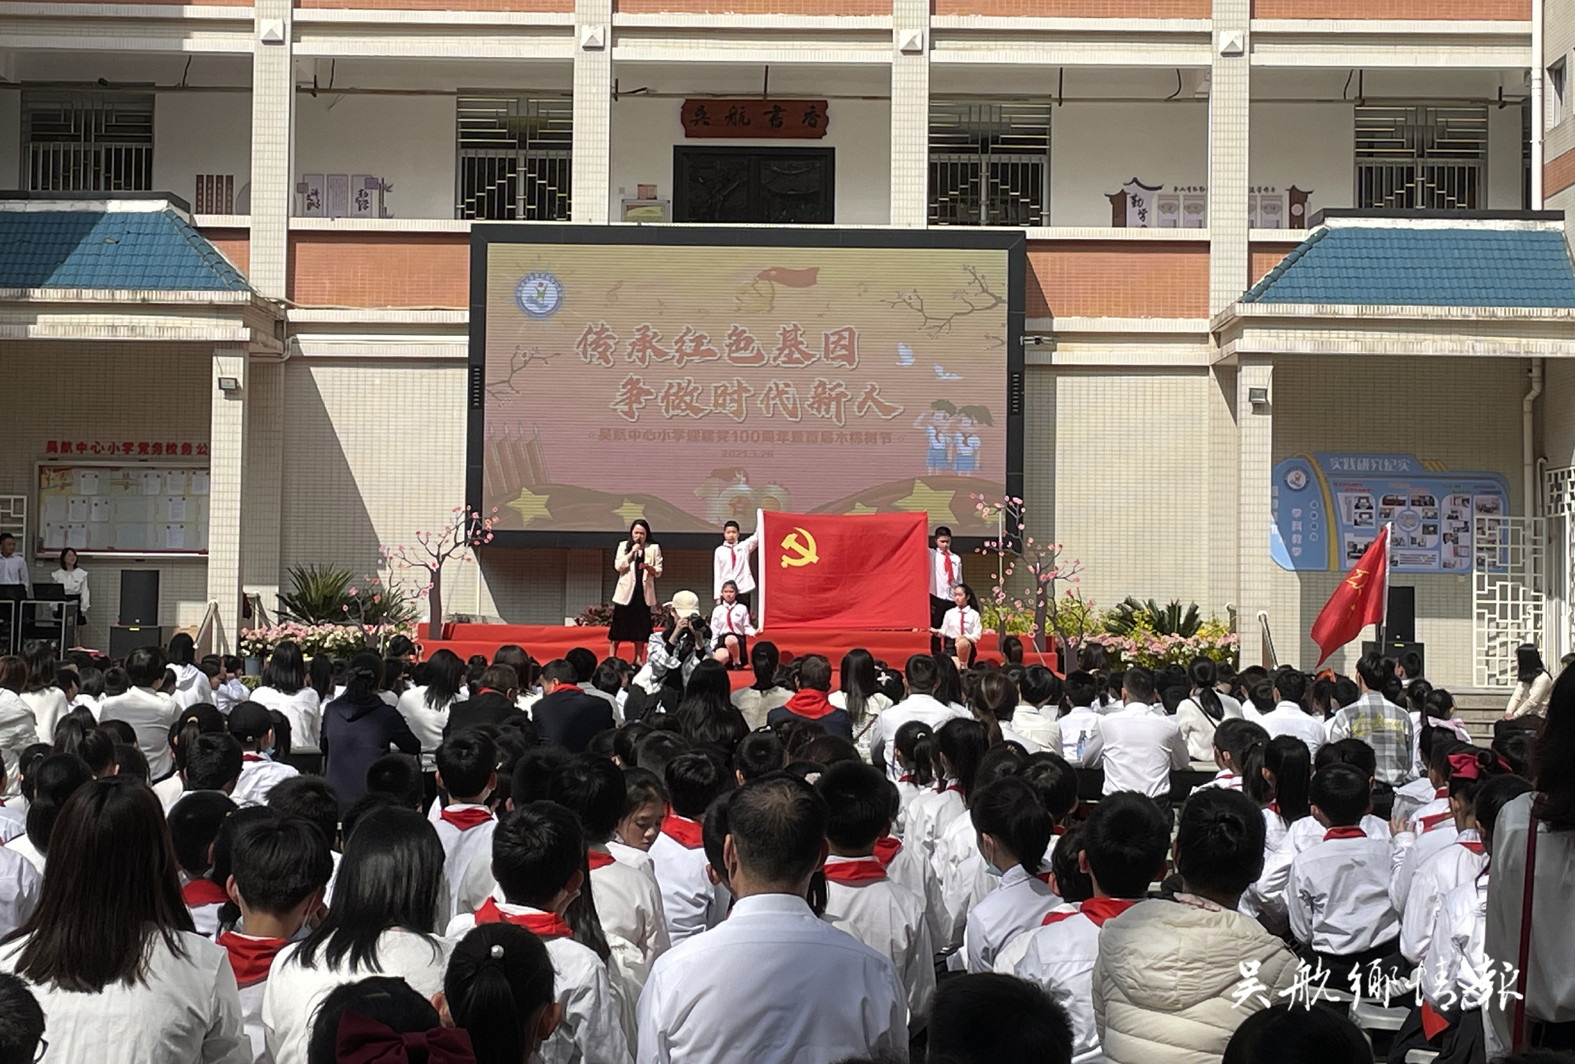 吴航中心小学举办庆祝建党100周年暨首届木棉节活动